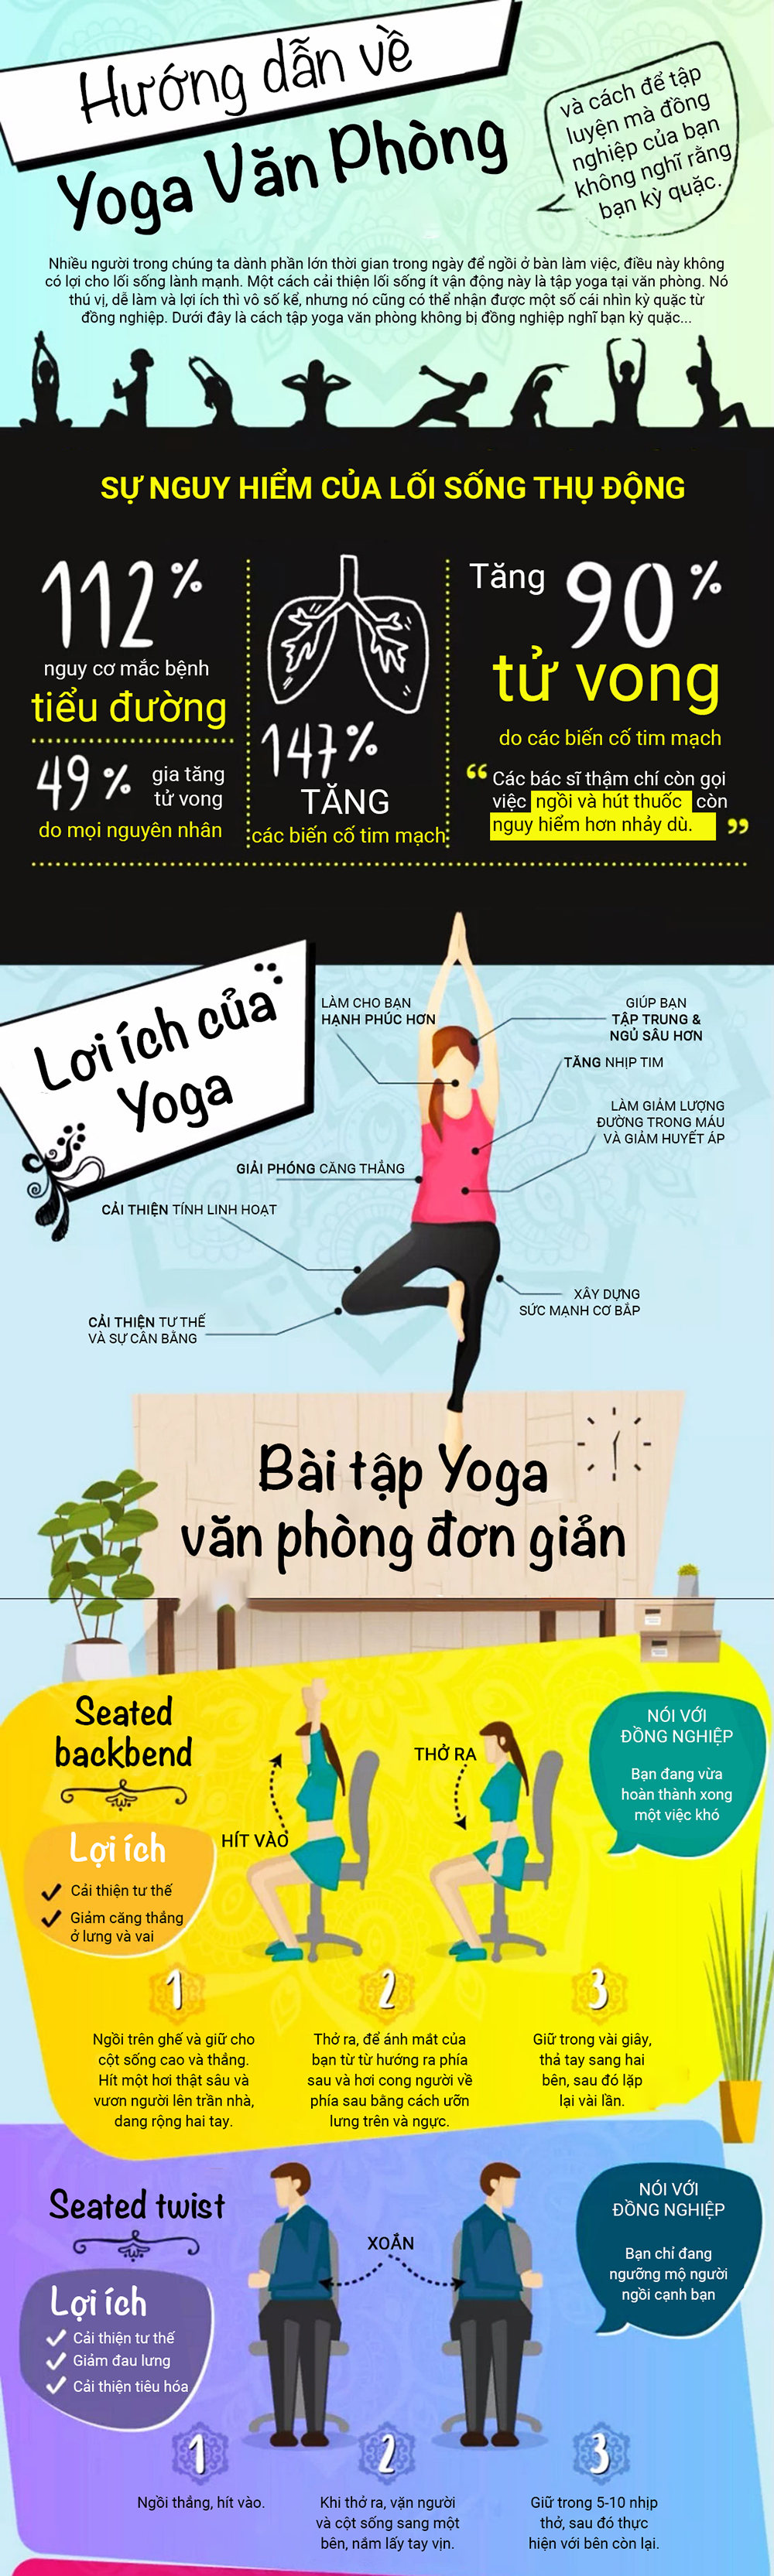 Yoga-1.png